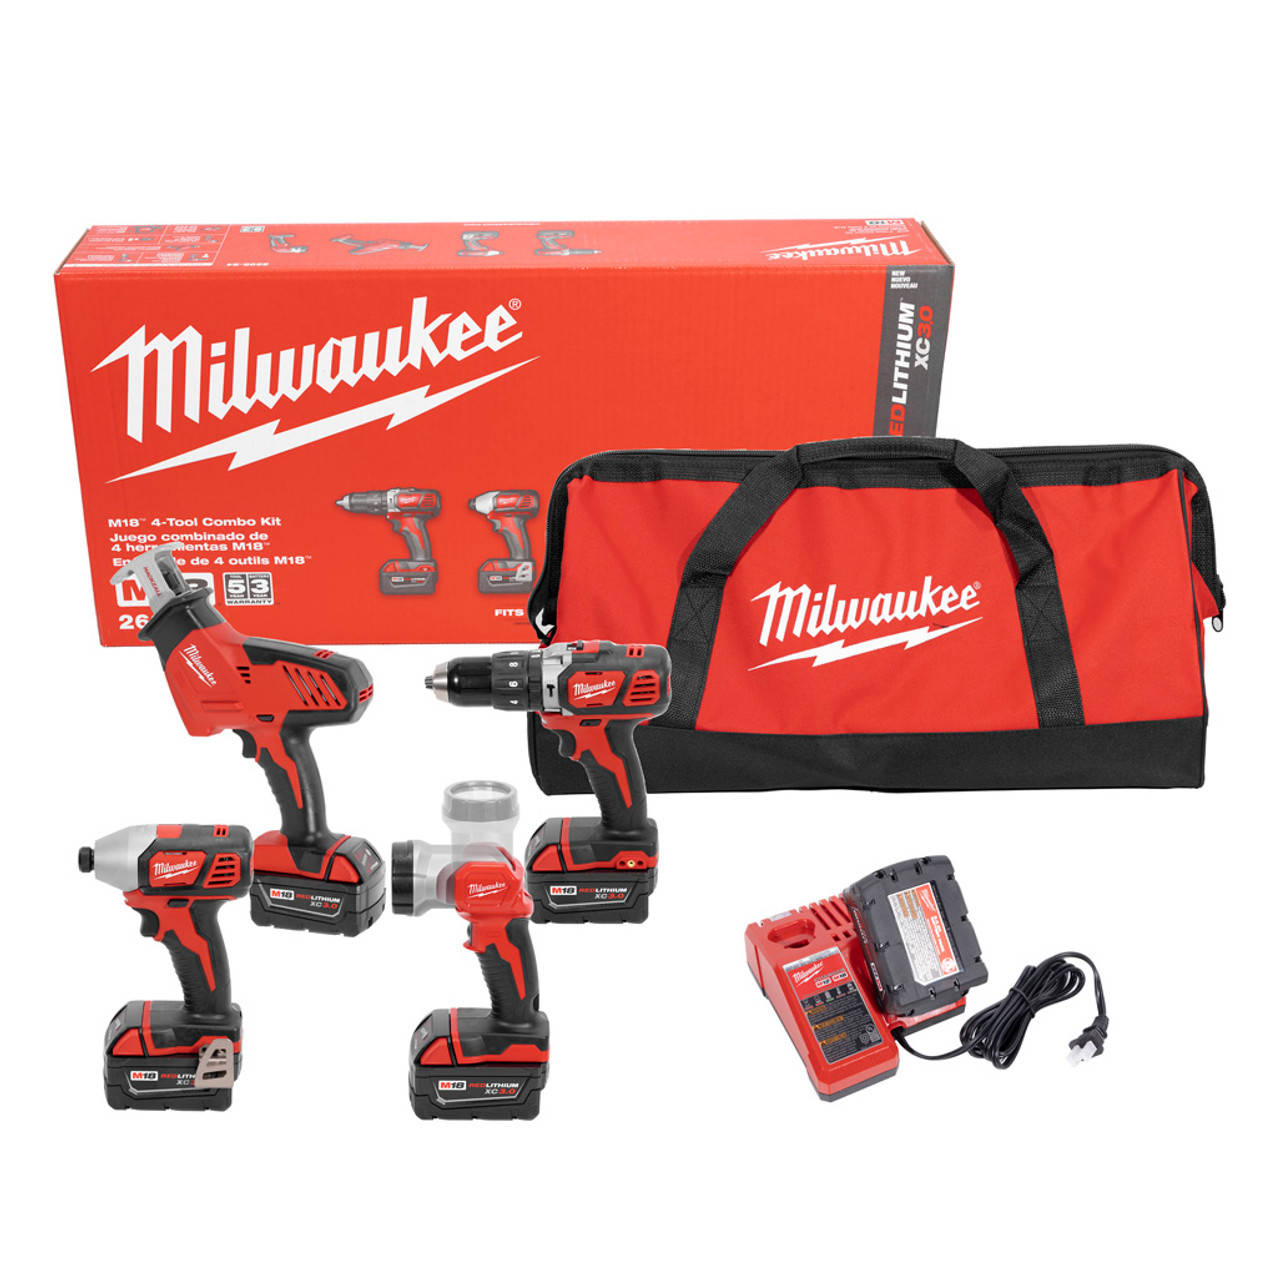 Milwaukee combo kit